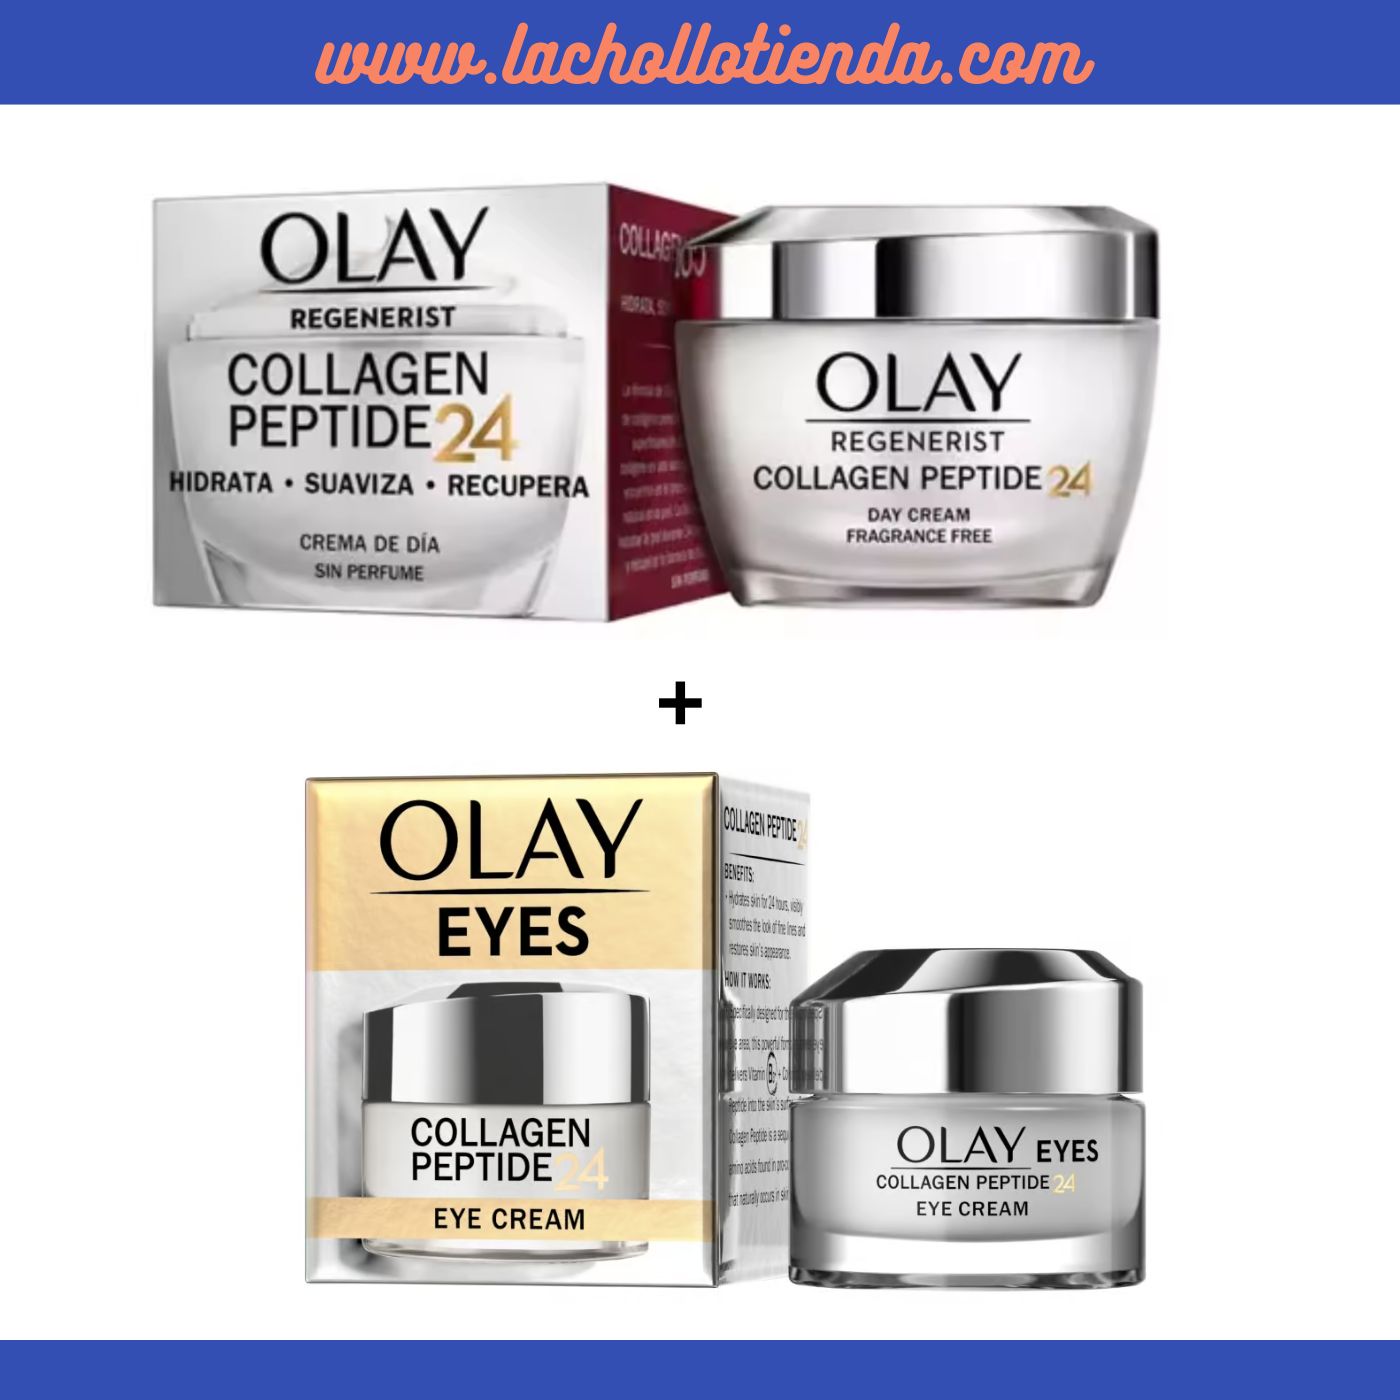 Olay - Collagen Peptide 24 - Crema de Día 50ml + OLAY - Contorno De Ojos Collagen Peptide24 Sin perfume 15ml.